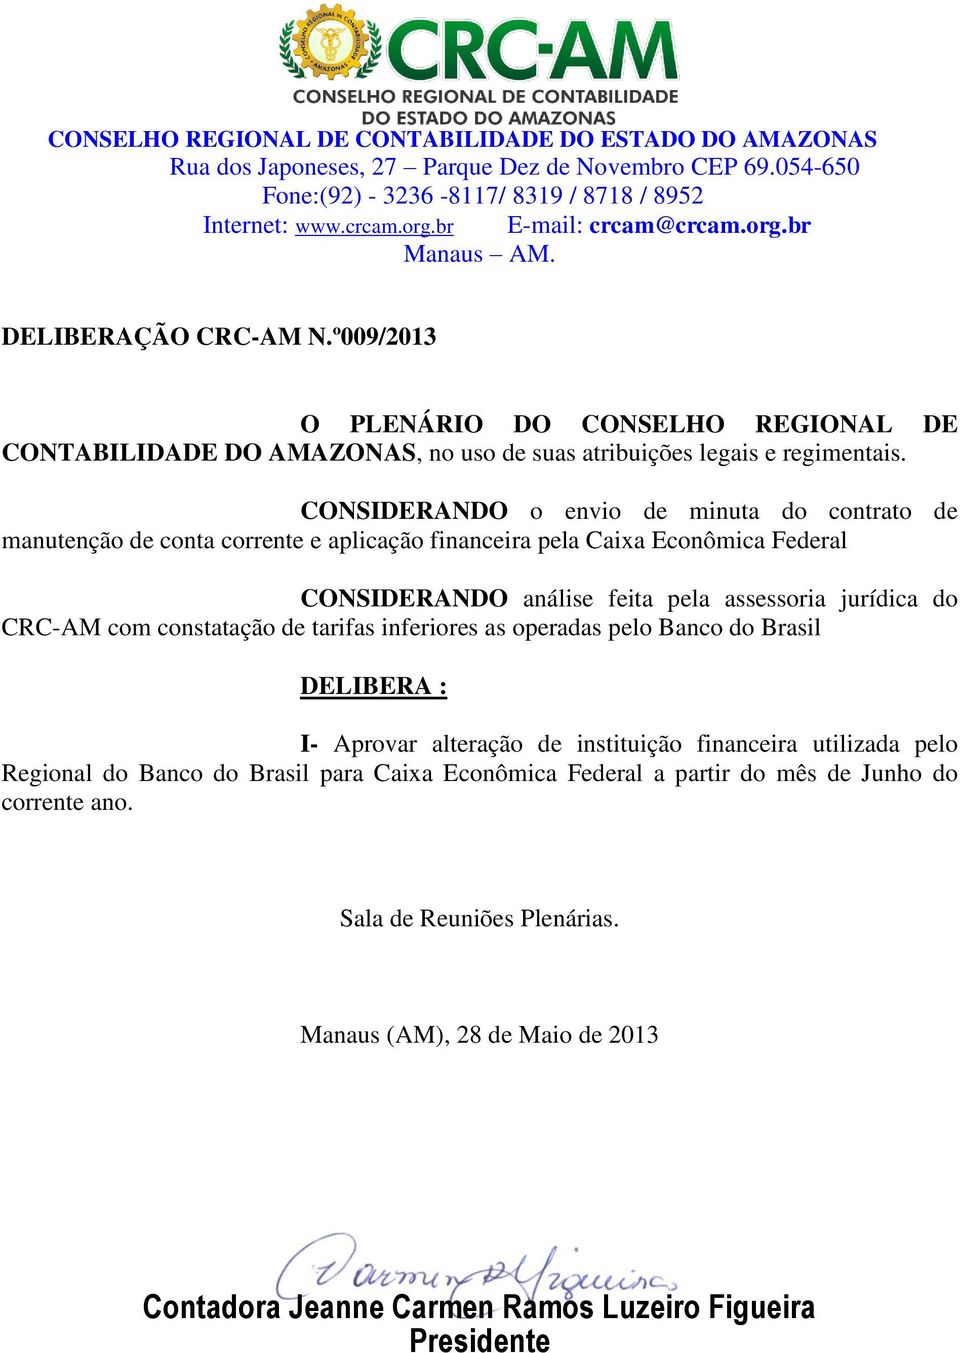 Caixa Econômica Federal CONSIDERANDO análise feita pela assessoria jurídica do CRC-AM com constatação de tarifas